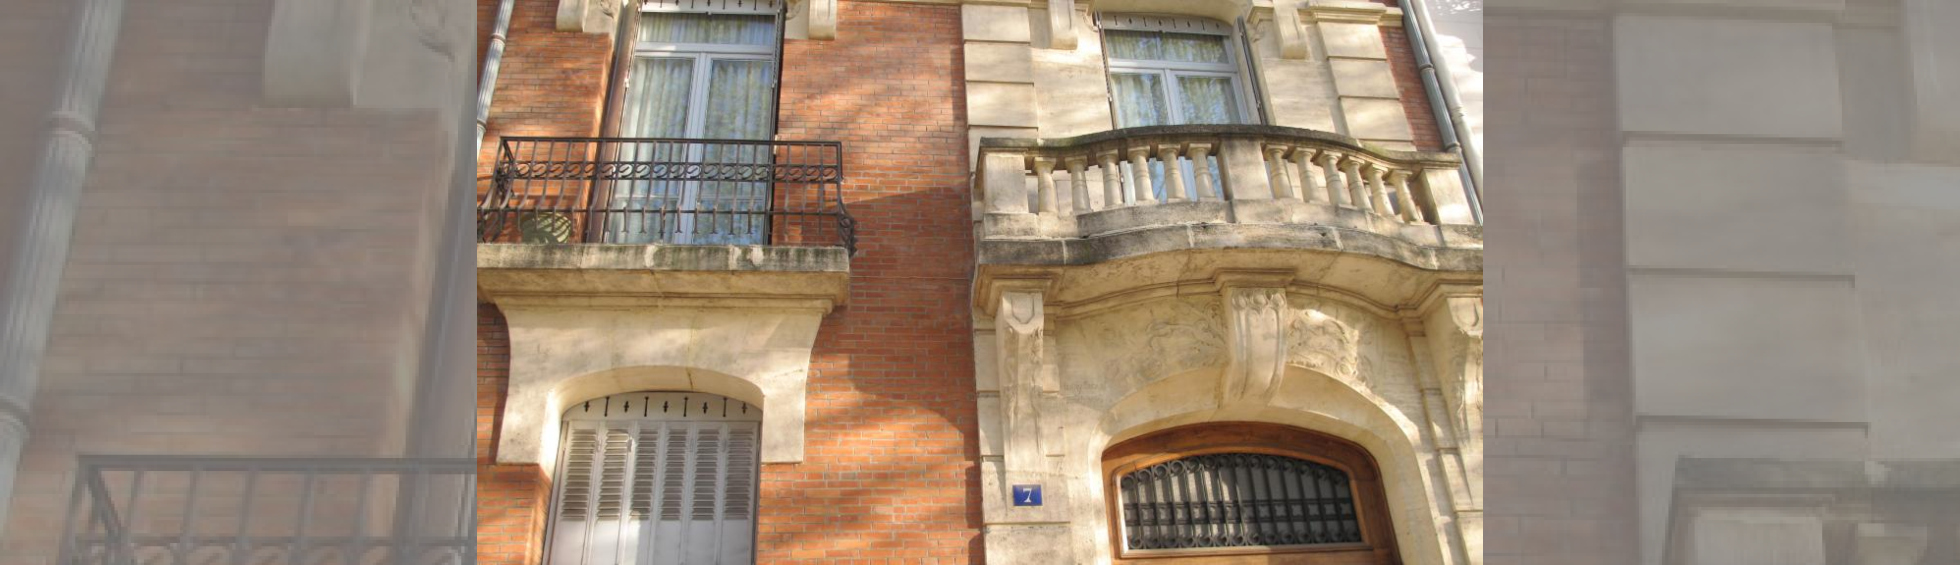 Trame verticale traitée en pierrre au droit de la porte d'entrée : balcon à balustres,pilastres et corniches